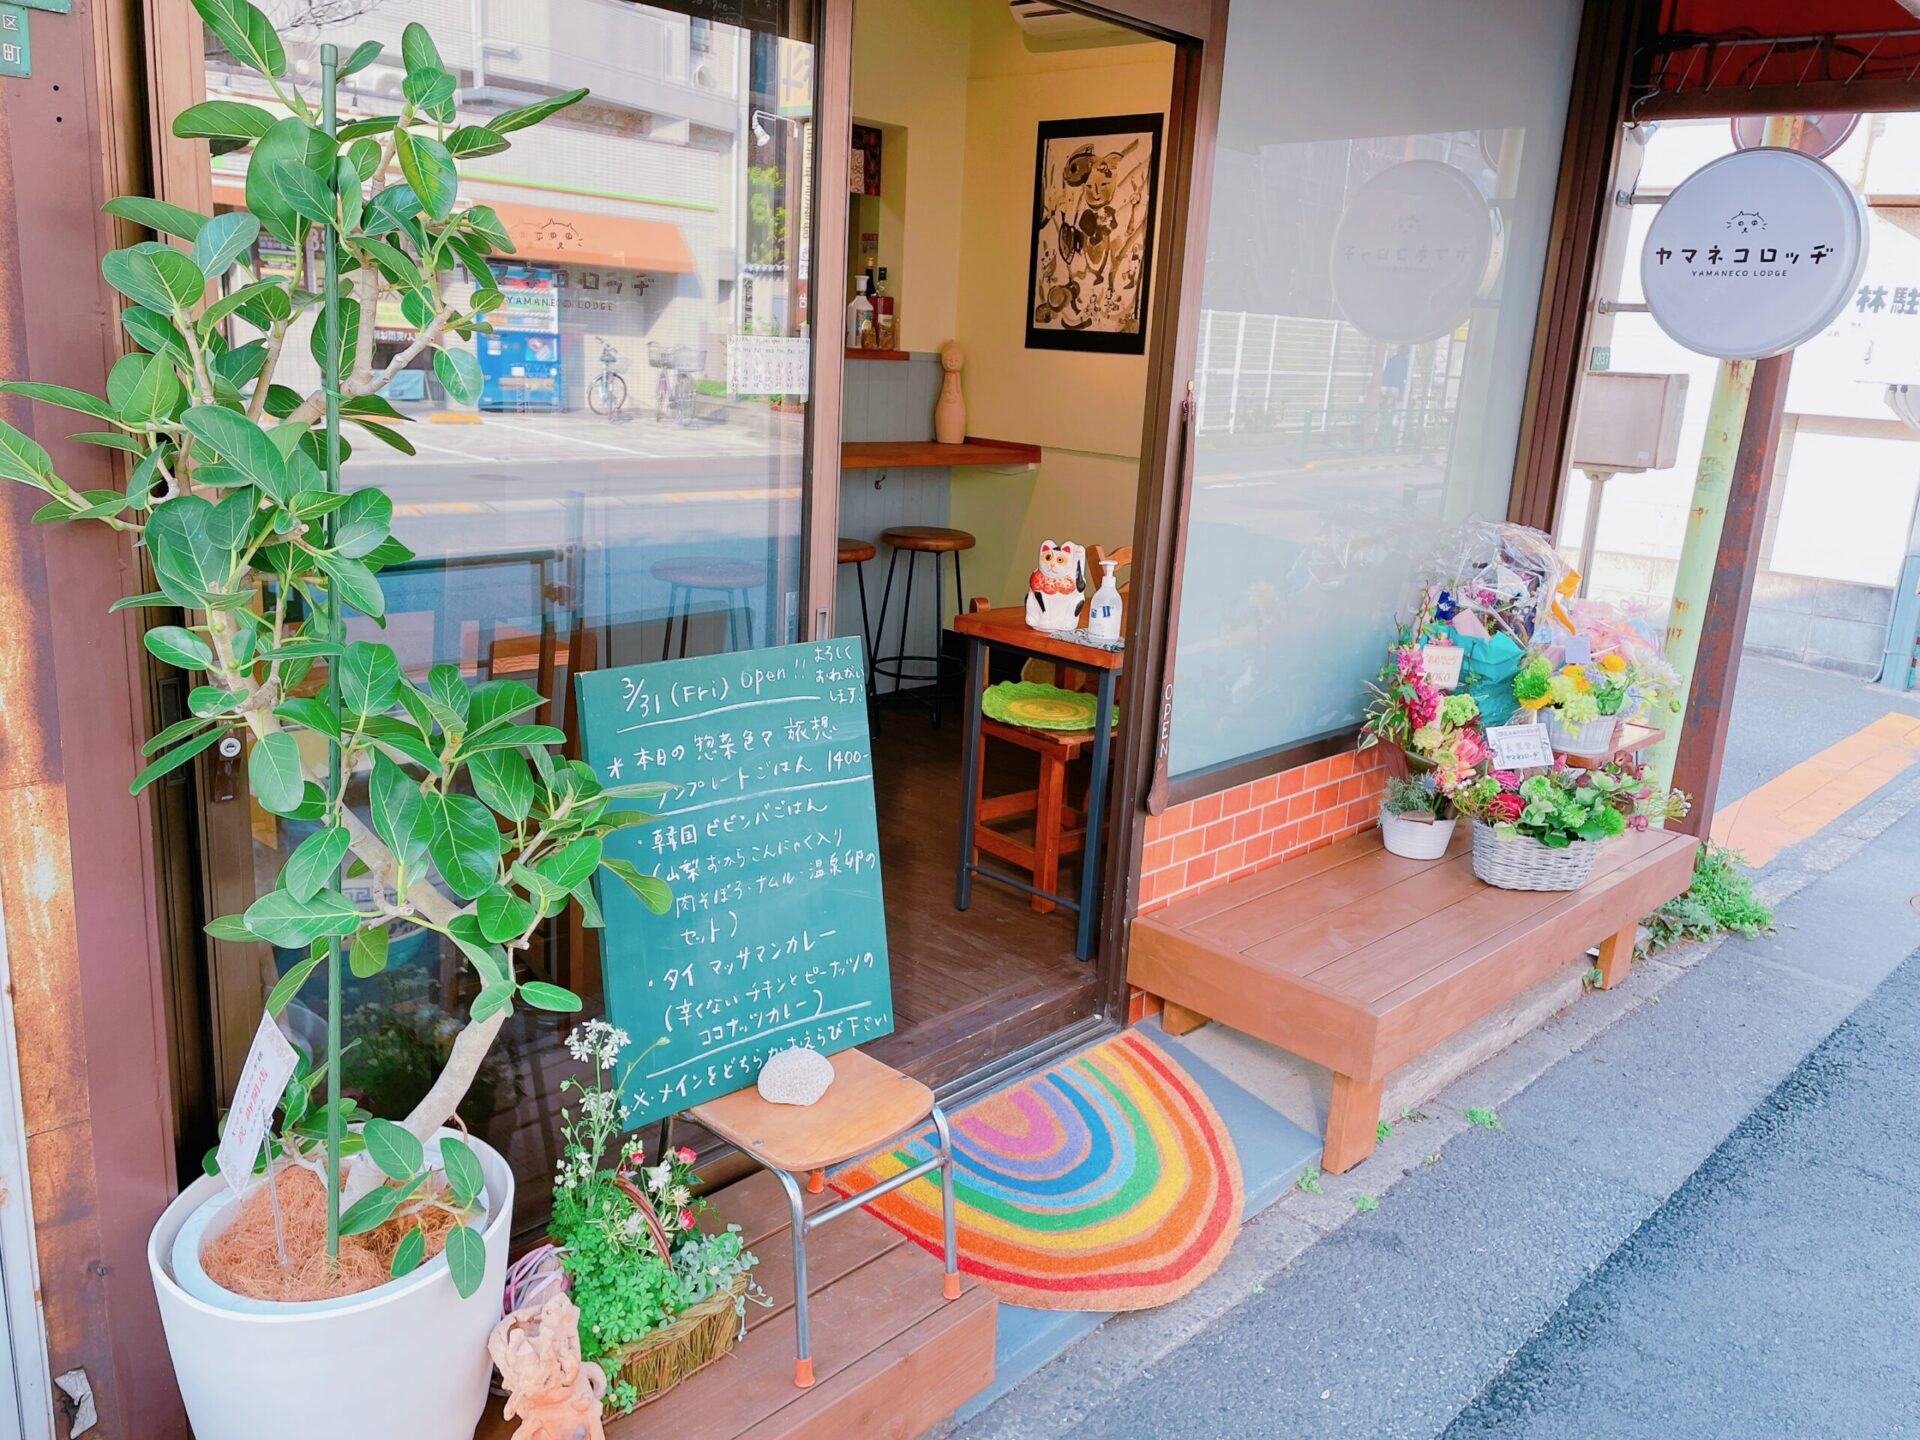 吉祥寺通りのカフェ「ヤマネコロッヂ」の外観